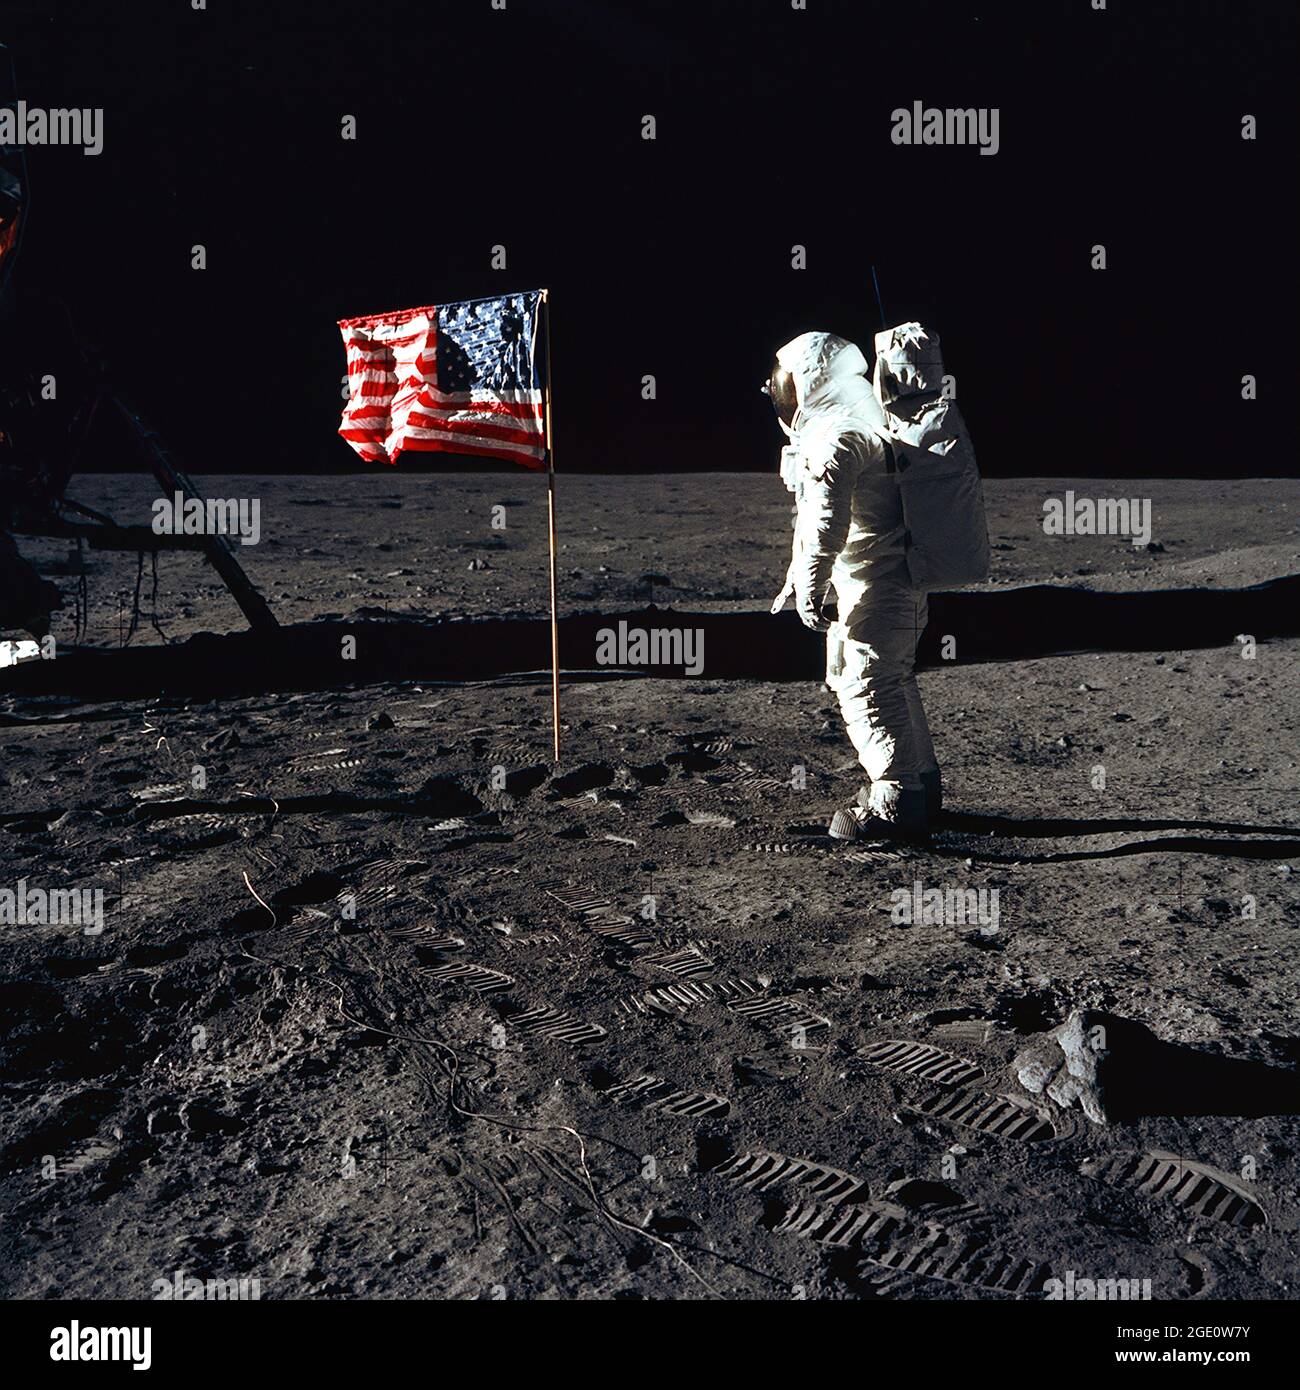 L'astronaute Buzz Aldrin, pilote de module lunaire de la première mission d'atterrissage lunaire, pose une photo à côté du drapeau des États-Unis déployé lors d'une activité extravéhiculaire Apollo 11 (EVA) sur la surface lunaire. Le module lunaire (LM) est à gauche, et les empreintes des astronautes sont clairement visibles dans le sol de la Lune. L'astronaute Neil A. Armstrong, commandant, a pris cette photo avec une caméra de surface lunaire Hasselblad de 70 mm. Tandis que les astronautes Armstrong et Aldrin descendaient dans le LM, l'« aigle », pour explorer la région de la mer de tranquillité de la Lune, l'astronaute Michael Collins. Banque D'Images